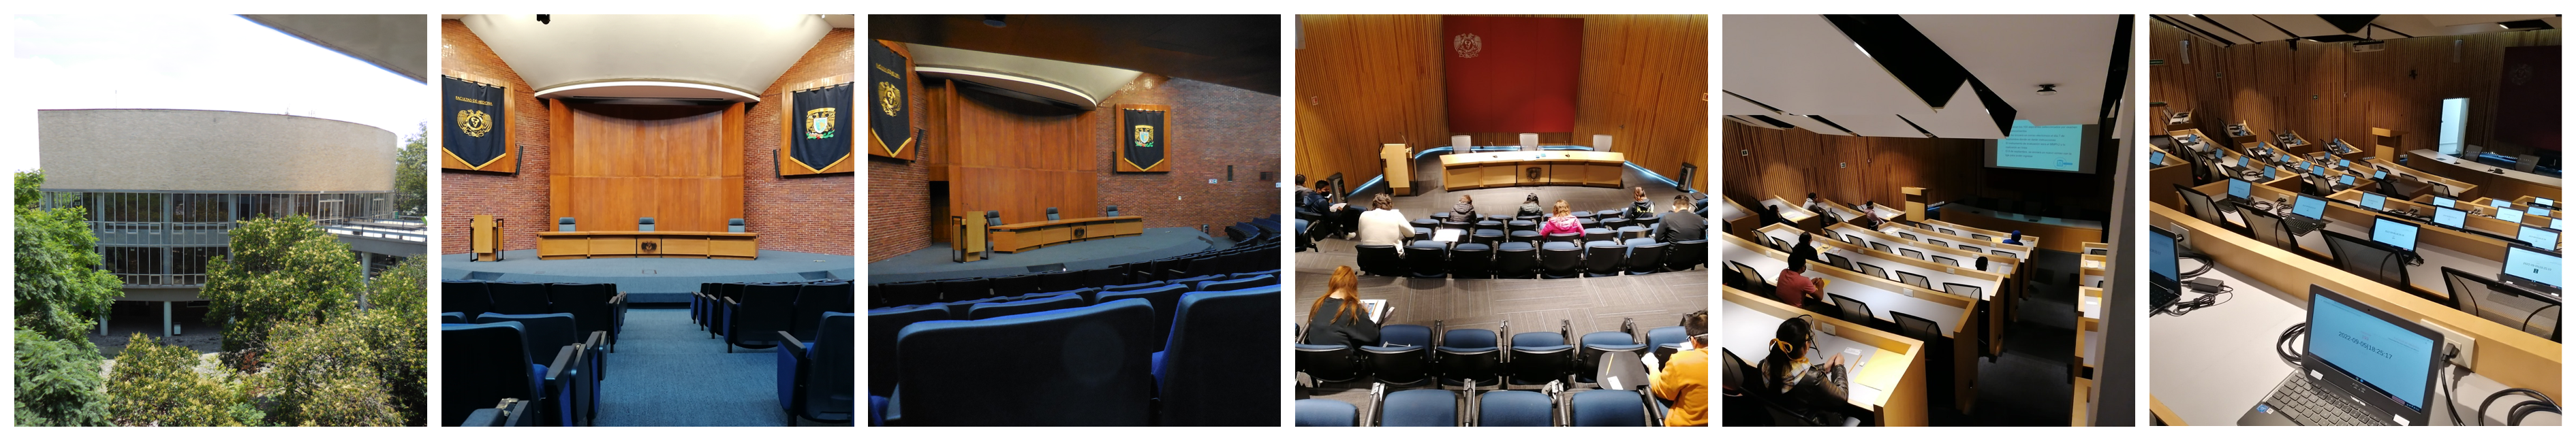 Auditorios de la Facultad de Medicina, UNAM